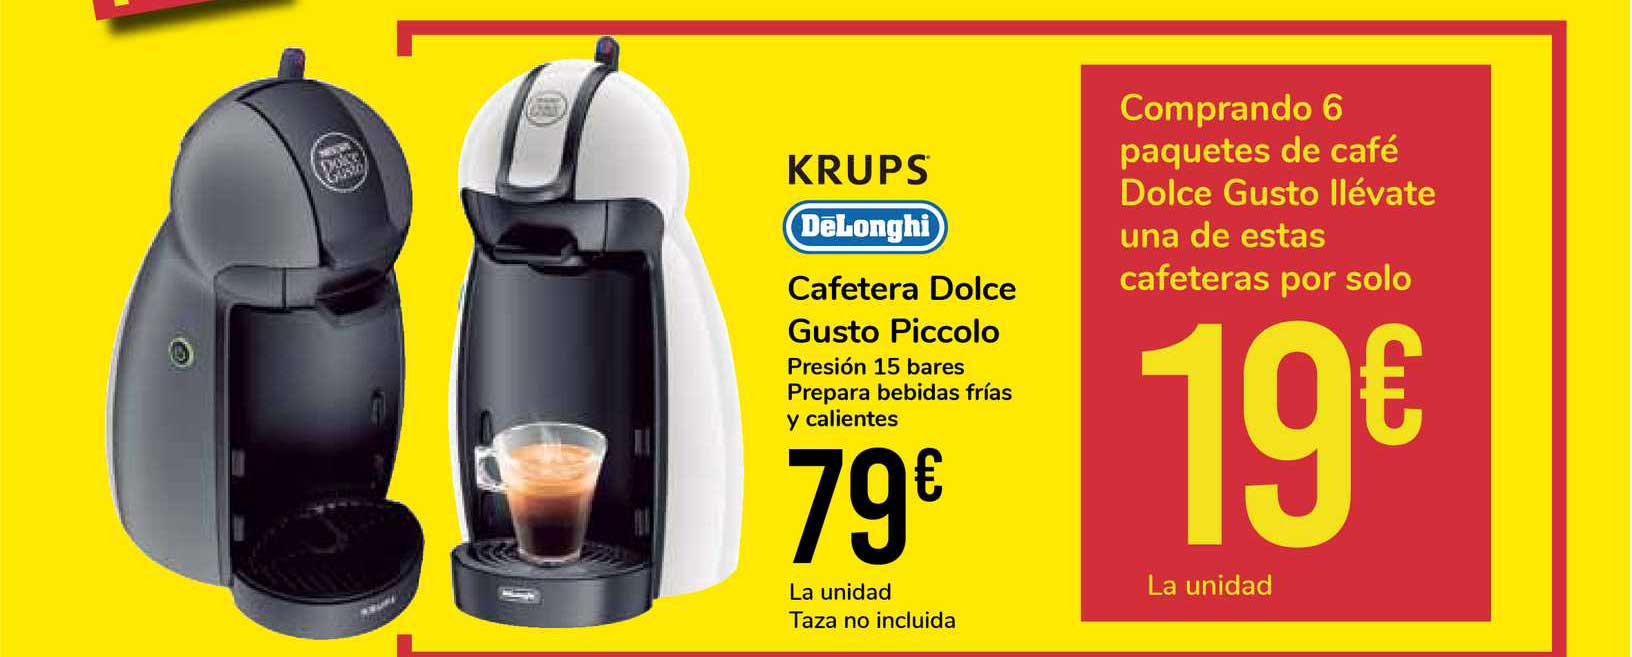 Carrefour pone en oferta la cafetera Dolce Gusto que todos quieren:  activamos nuestras mañanas por menos de 75 euros